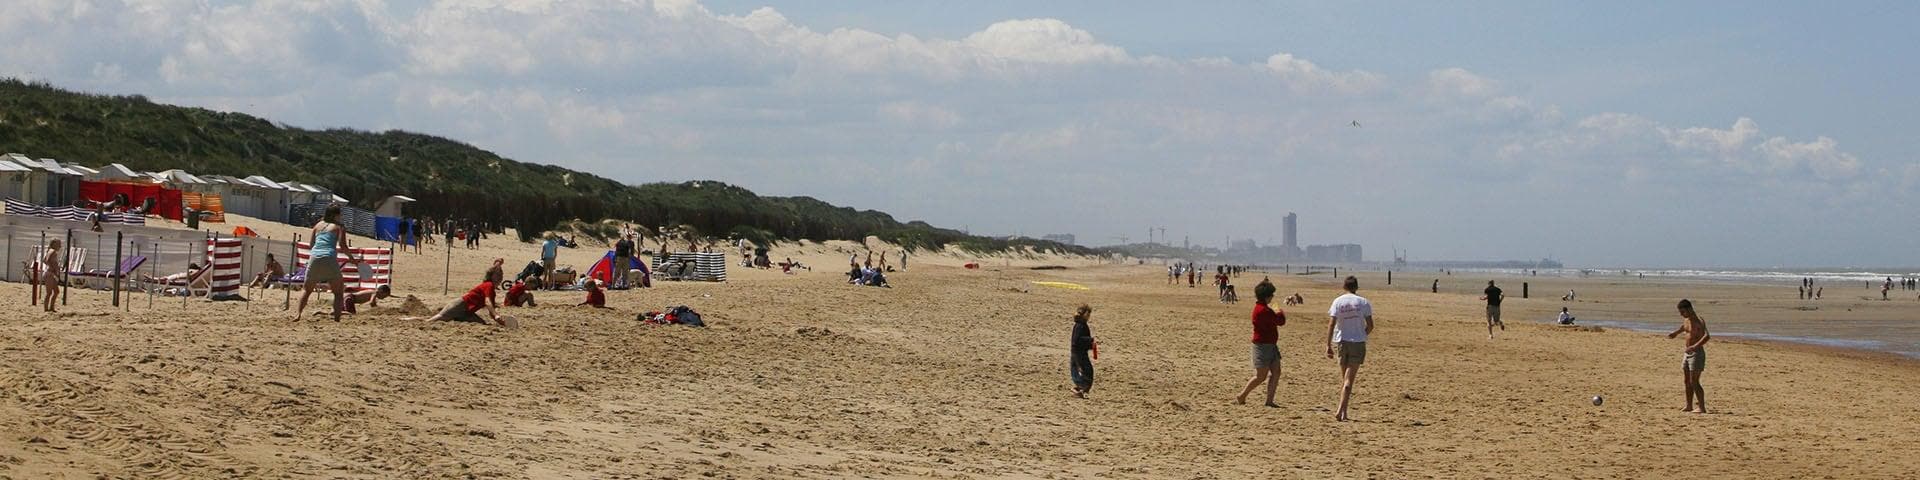 Vakantie bij Sunparks aan de Belgische kust